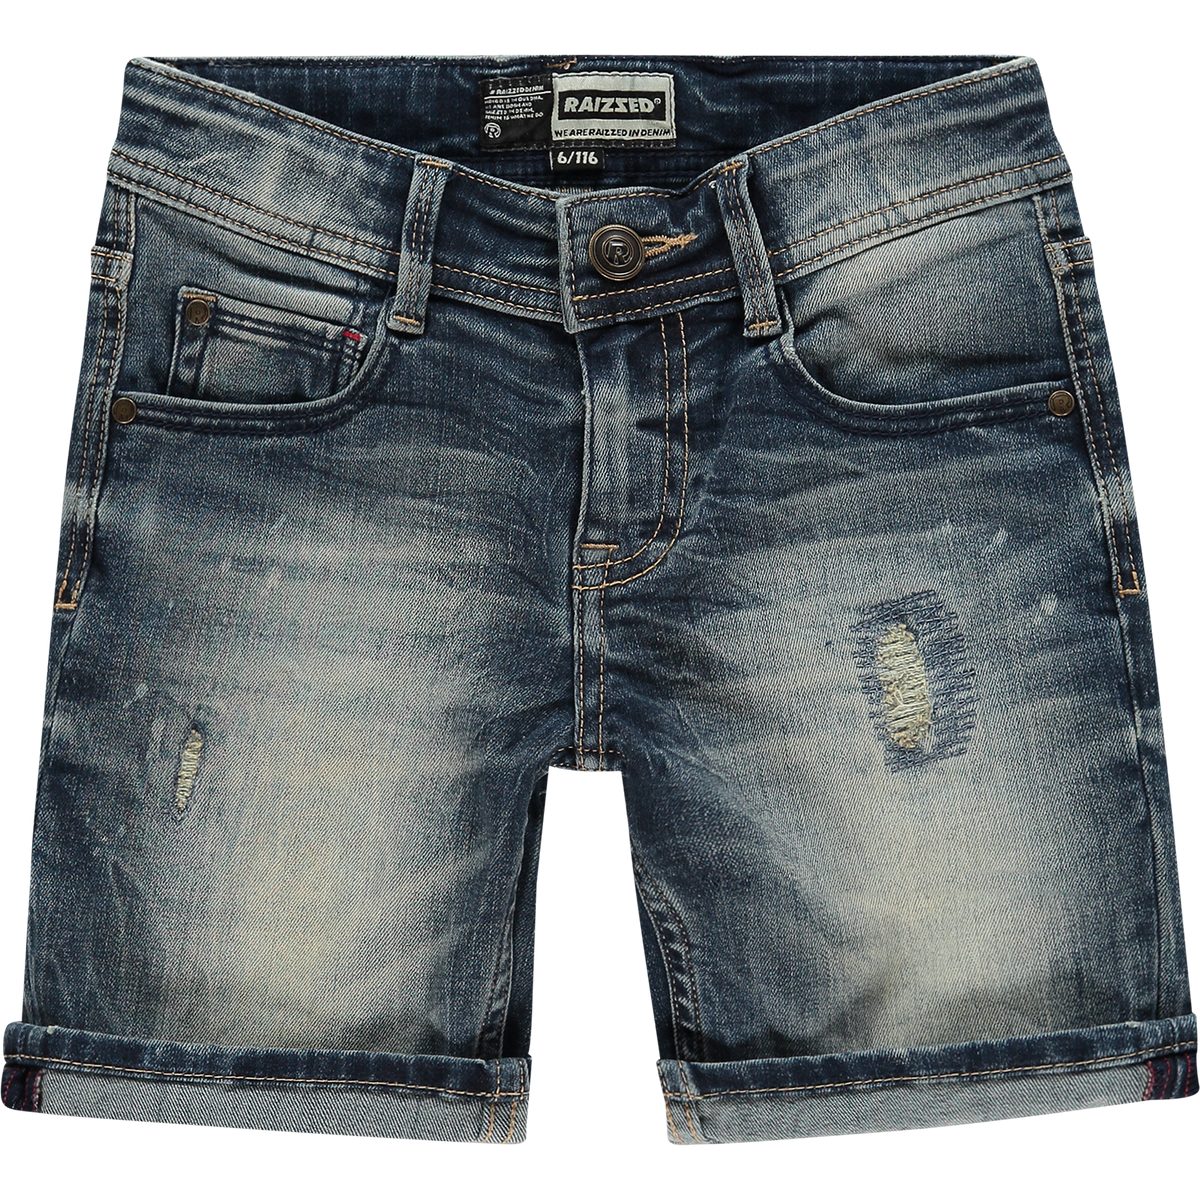 Jungen Shorts Jeans Oregon Vintage Blue